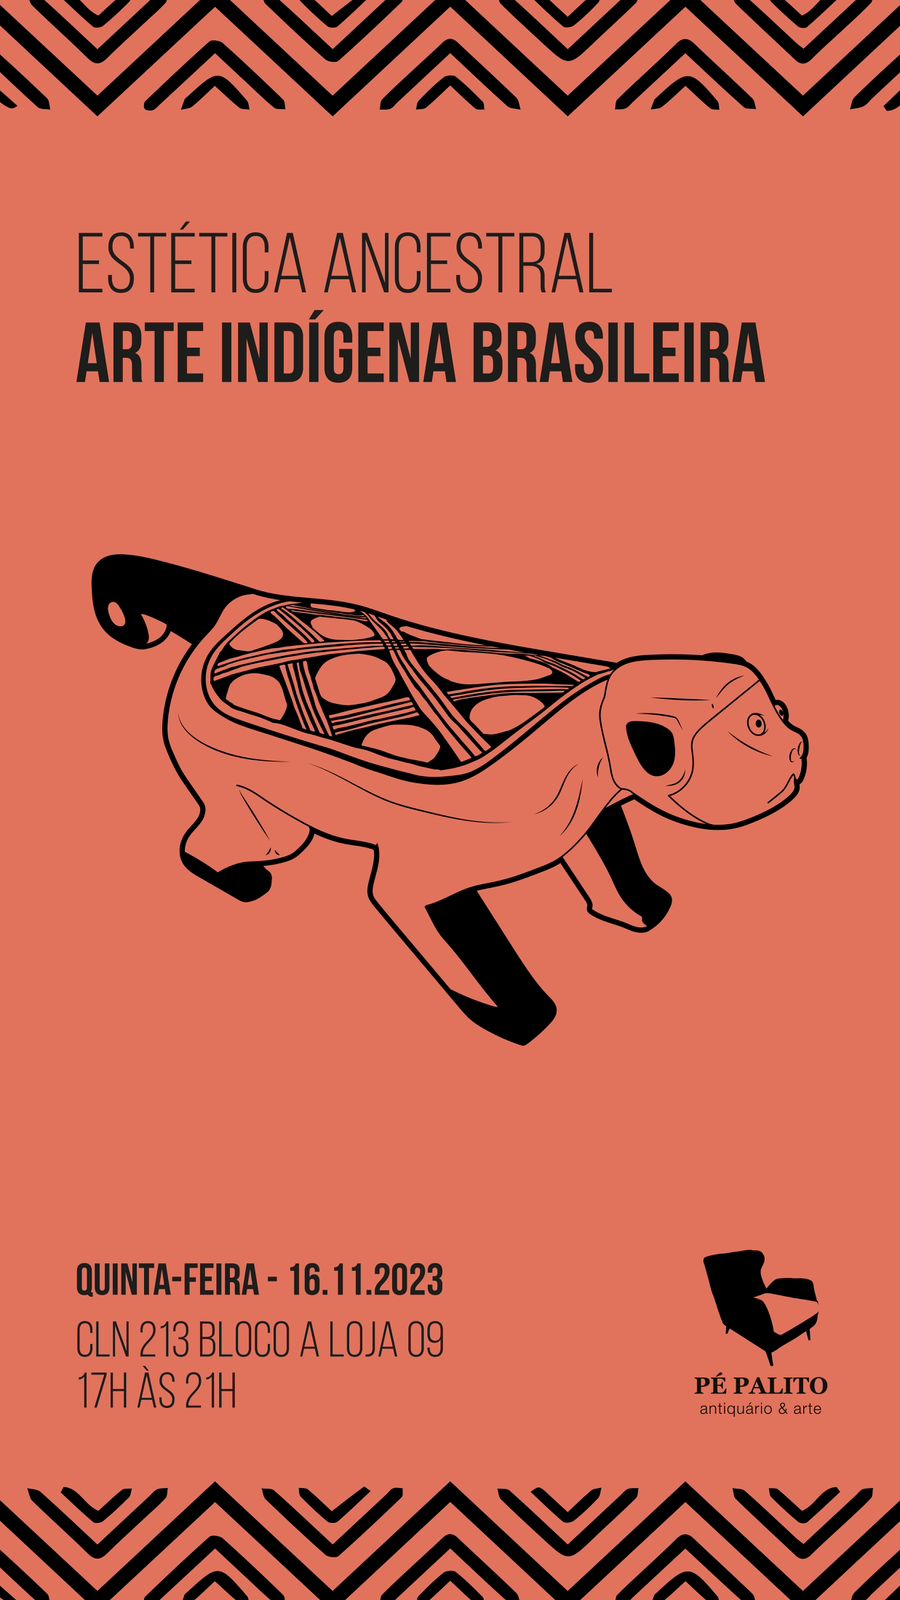 Estética ancestral – Arte indígena brasileira